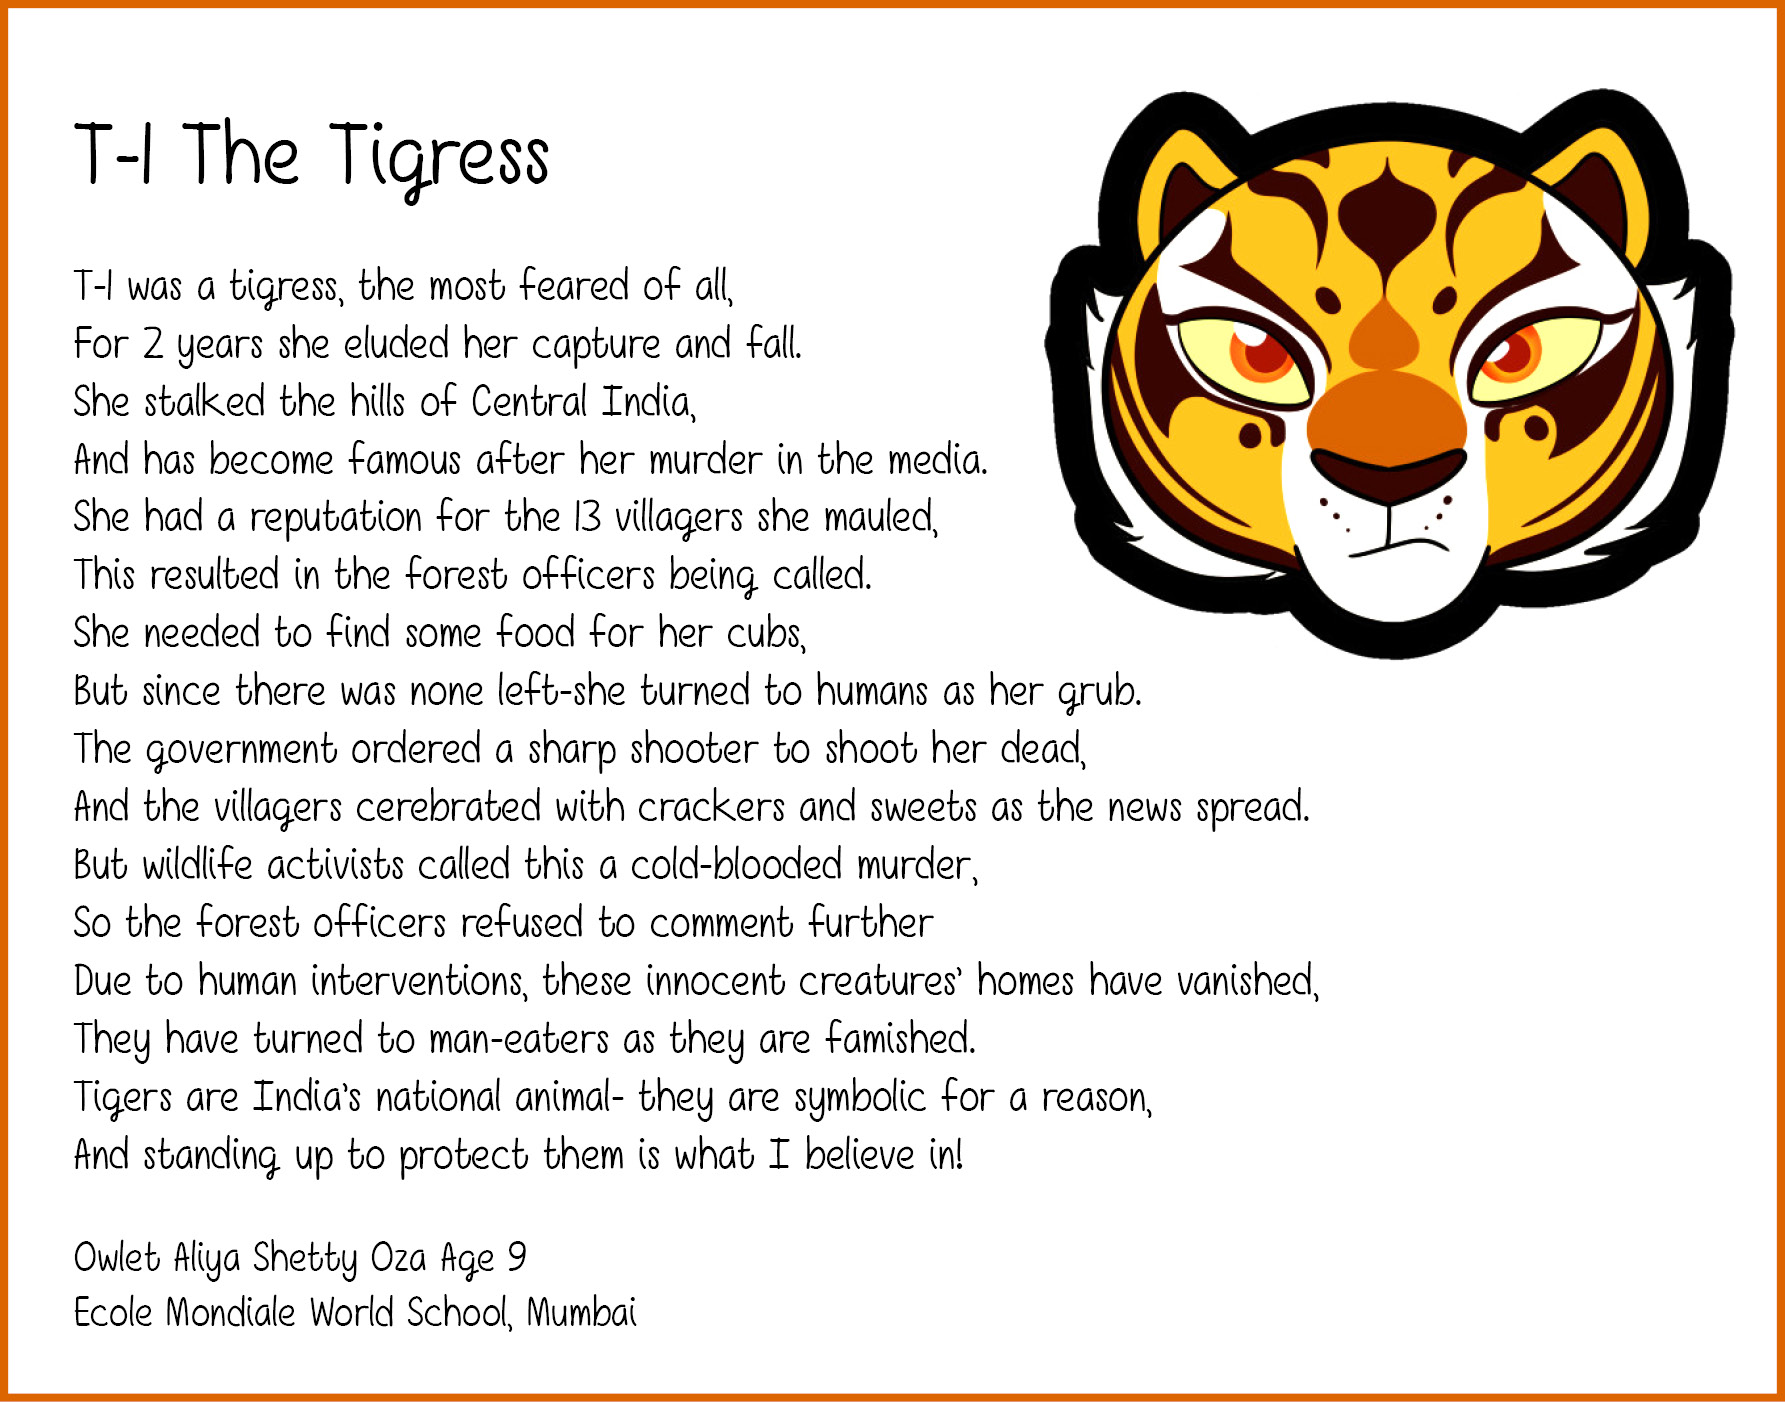 T-1 The Tigress